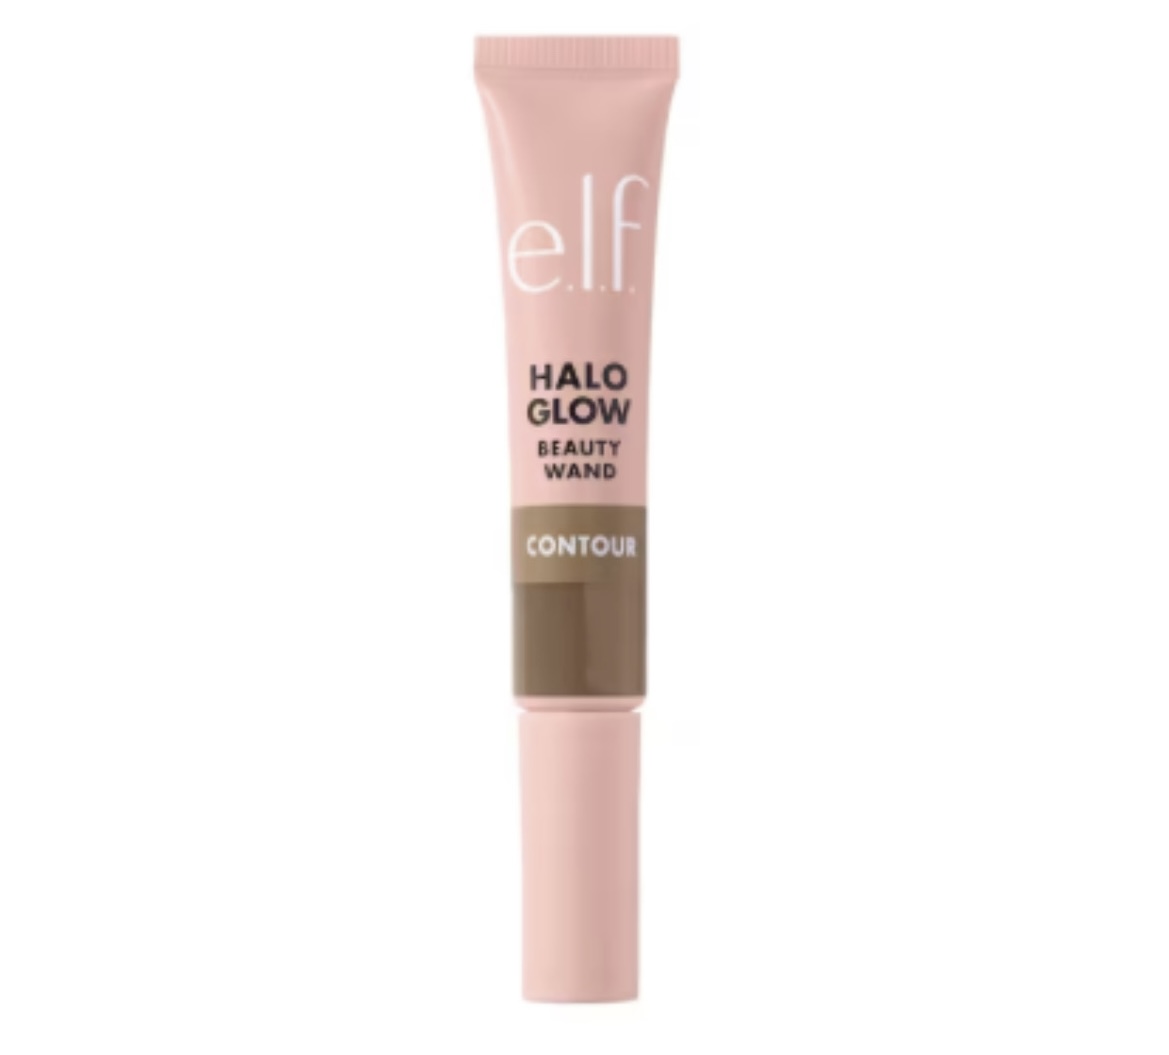 ELF - Halo Glow Contour Beauty Wand